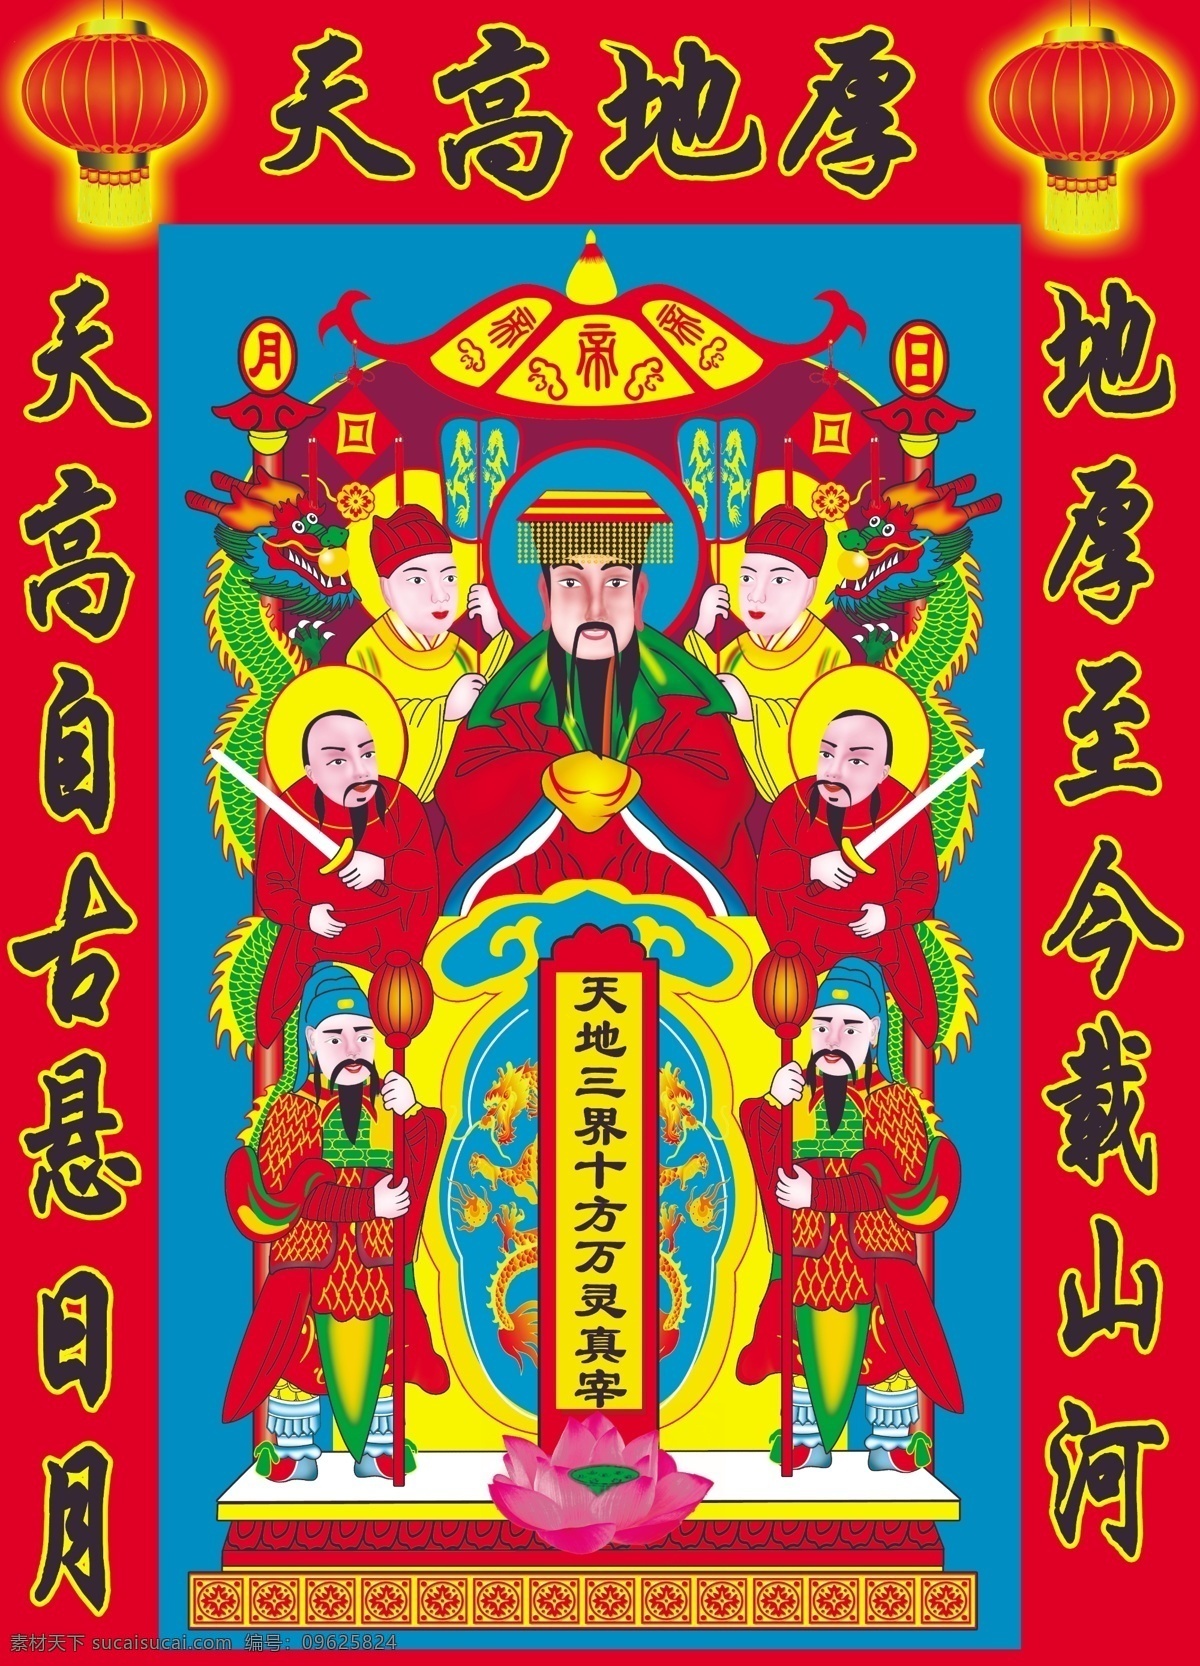 年画 中国元素 传统图案 吉祥图案 矢量 共享 文化艺术 传统文化